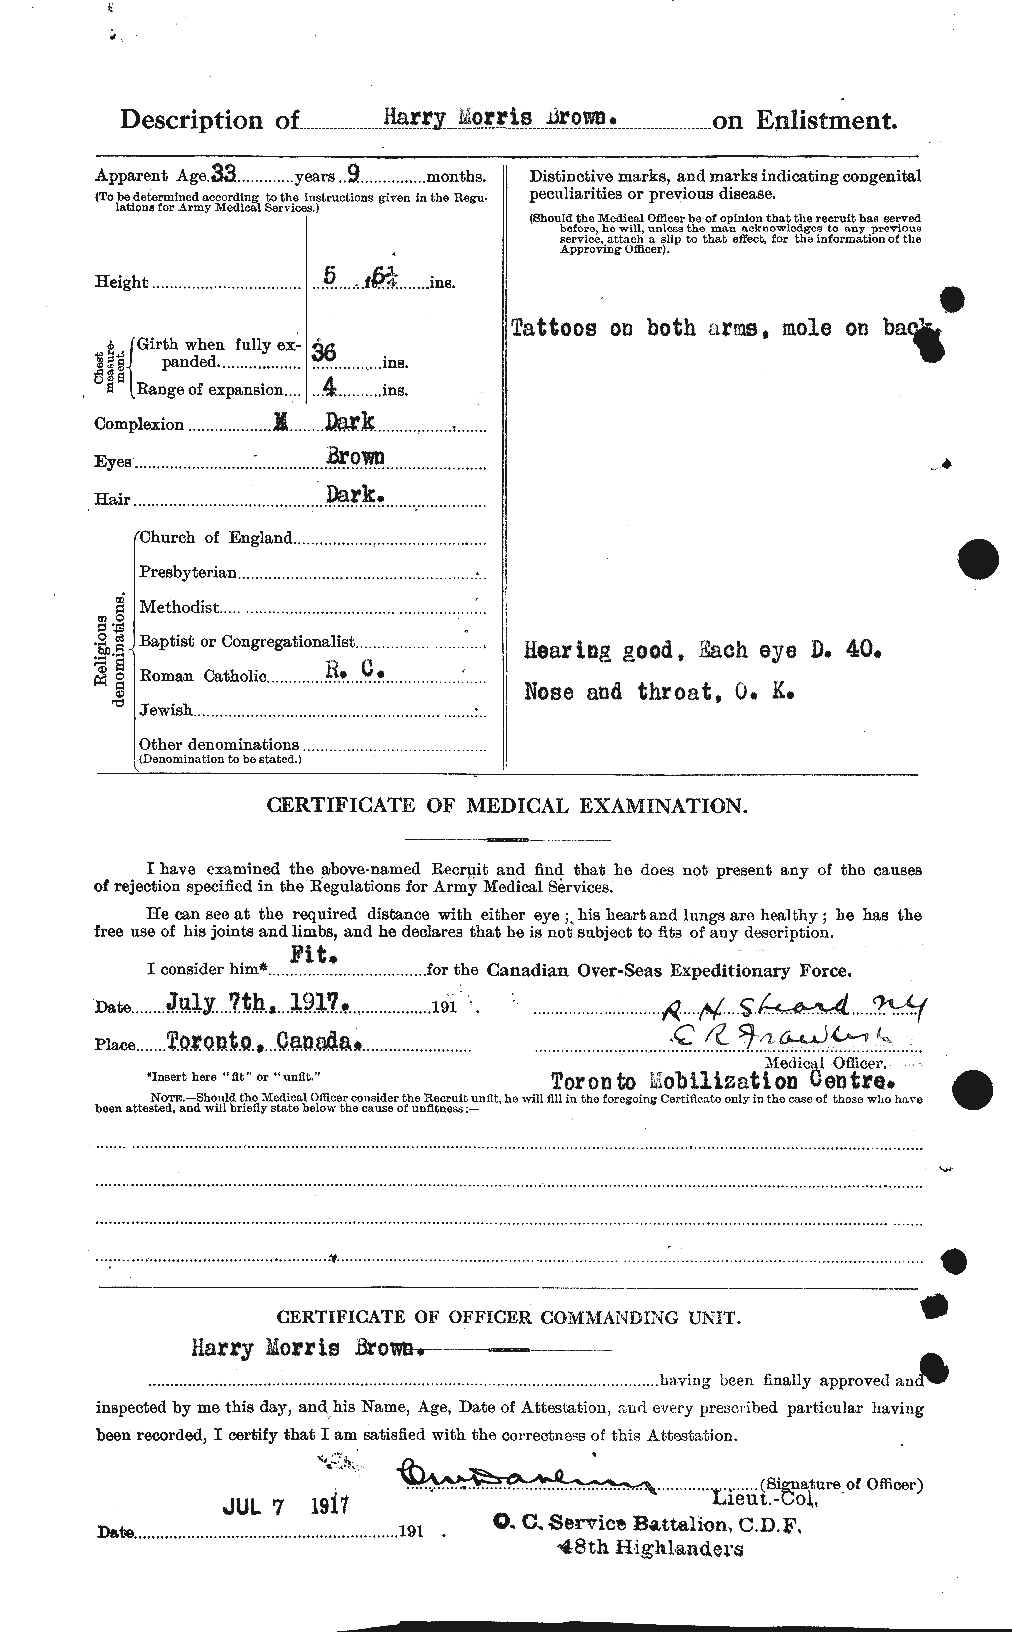 Dossiers du Personnel de la Première Guerre mondiale - CEC 265462b